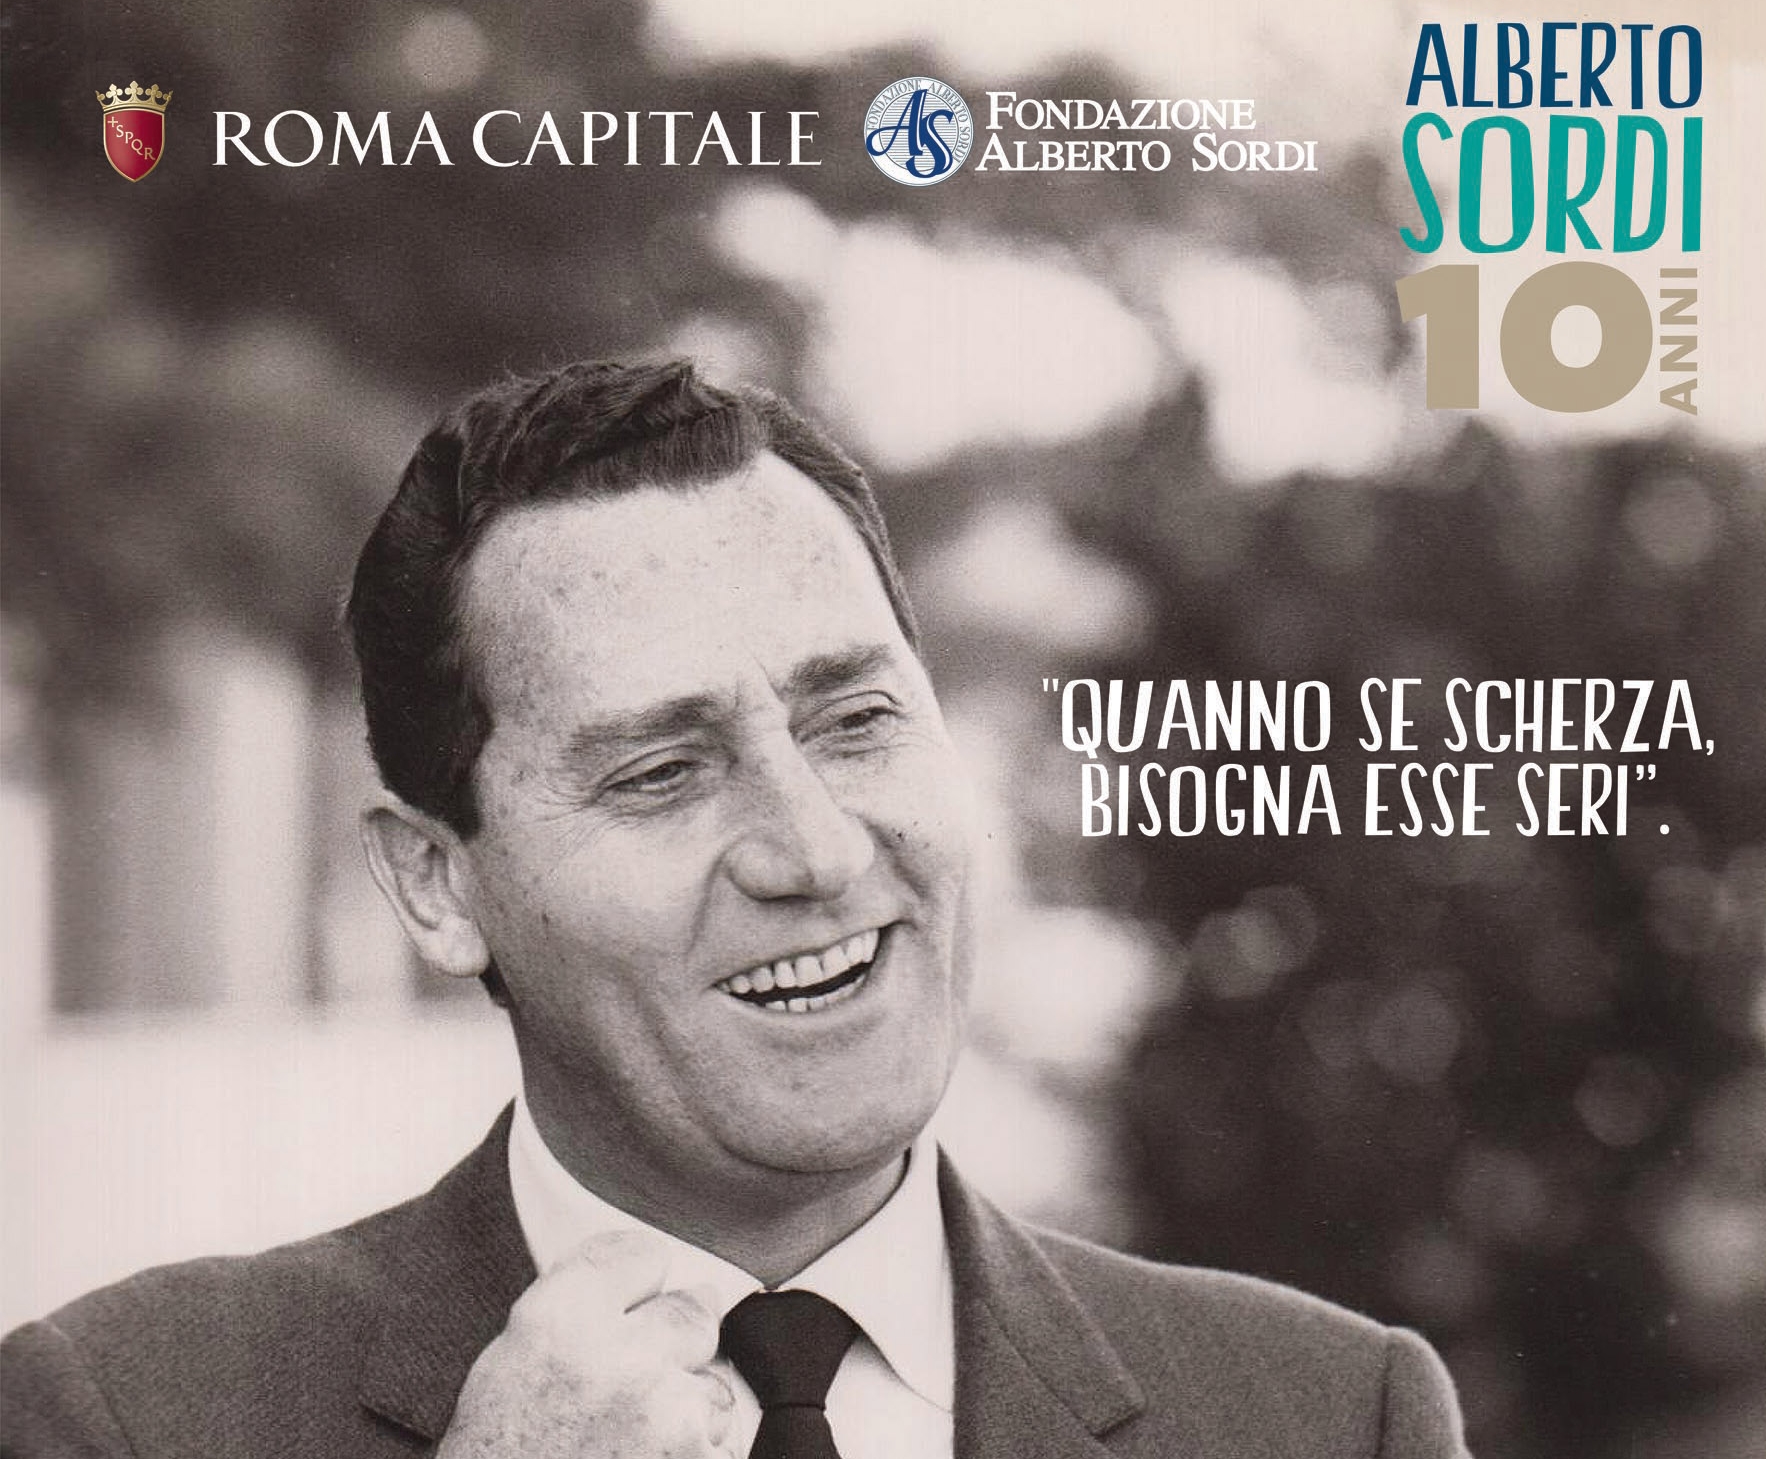 Dieci anni fa, il 25 febbraio 2003, Alberto Sordi è scomparso lasciando un vuoto enorme nel cinema e nello spettacolo. Dal 14 al 25 febbraio 2013 la città di Roma omeggerà […]